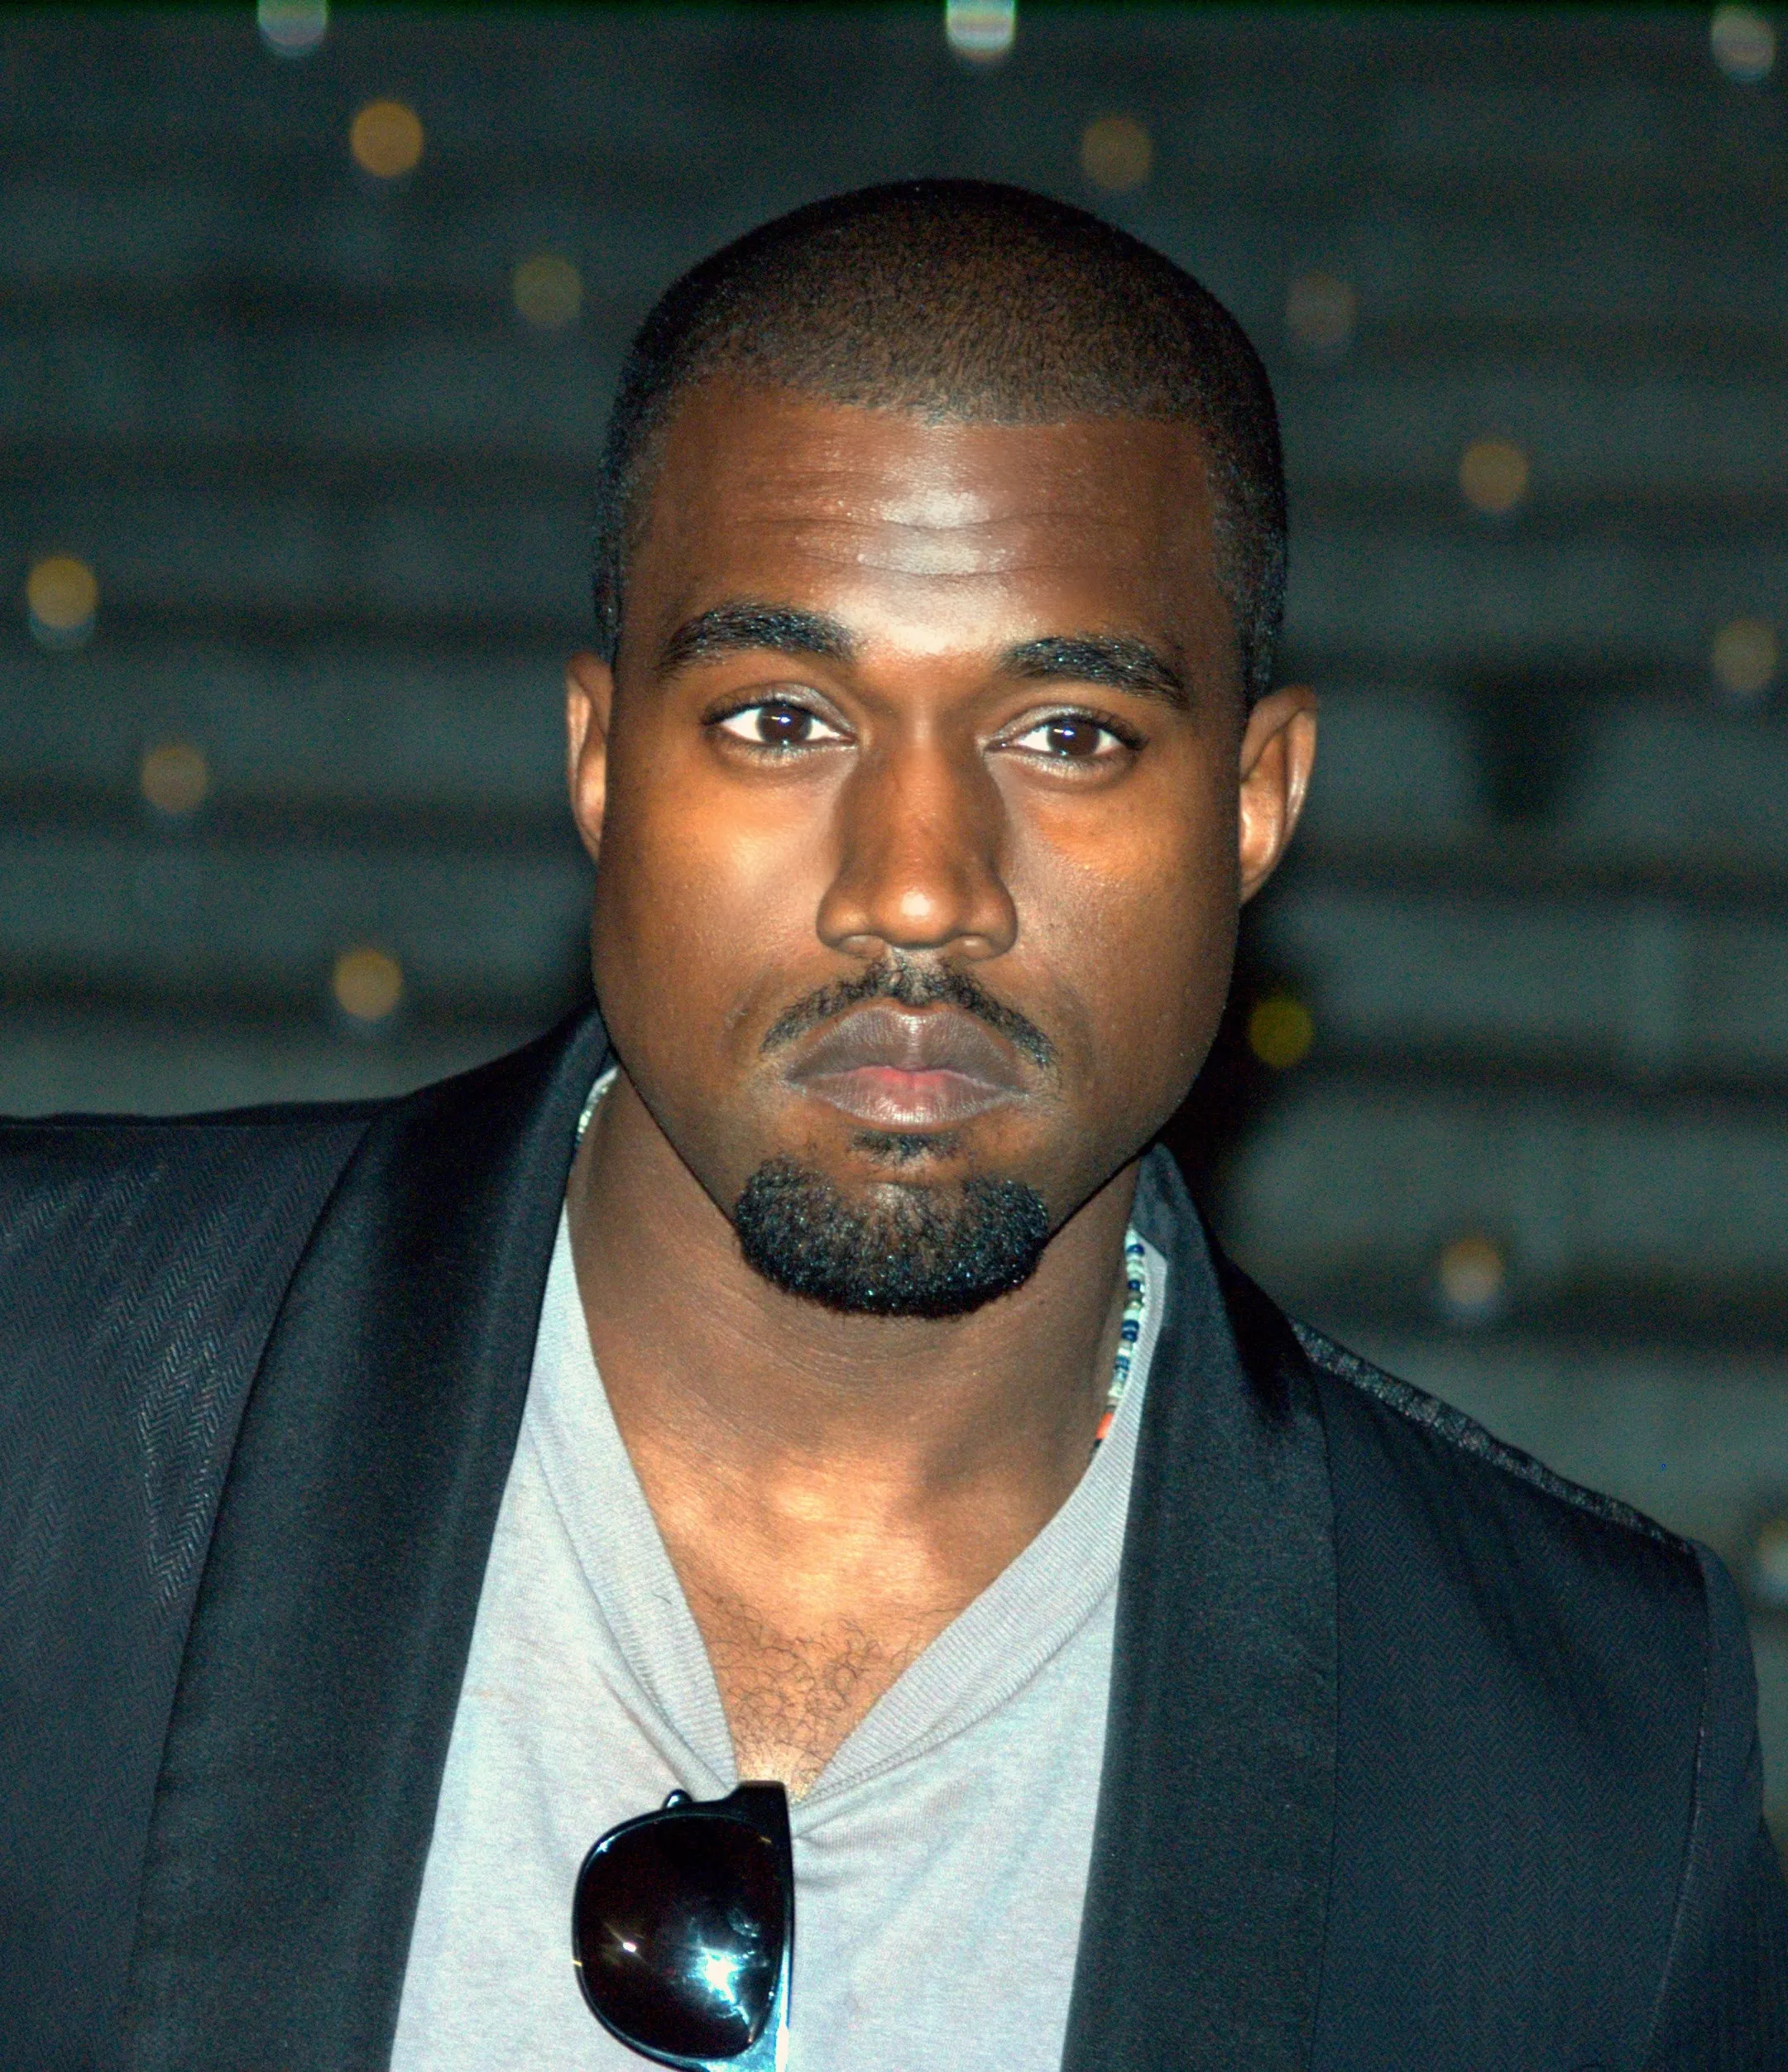 Kanye West betalte 85.000 dollar for å bruke omdiskutert fotografi som albumcover